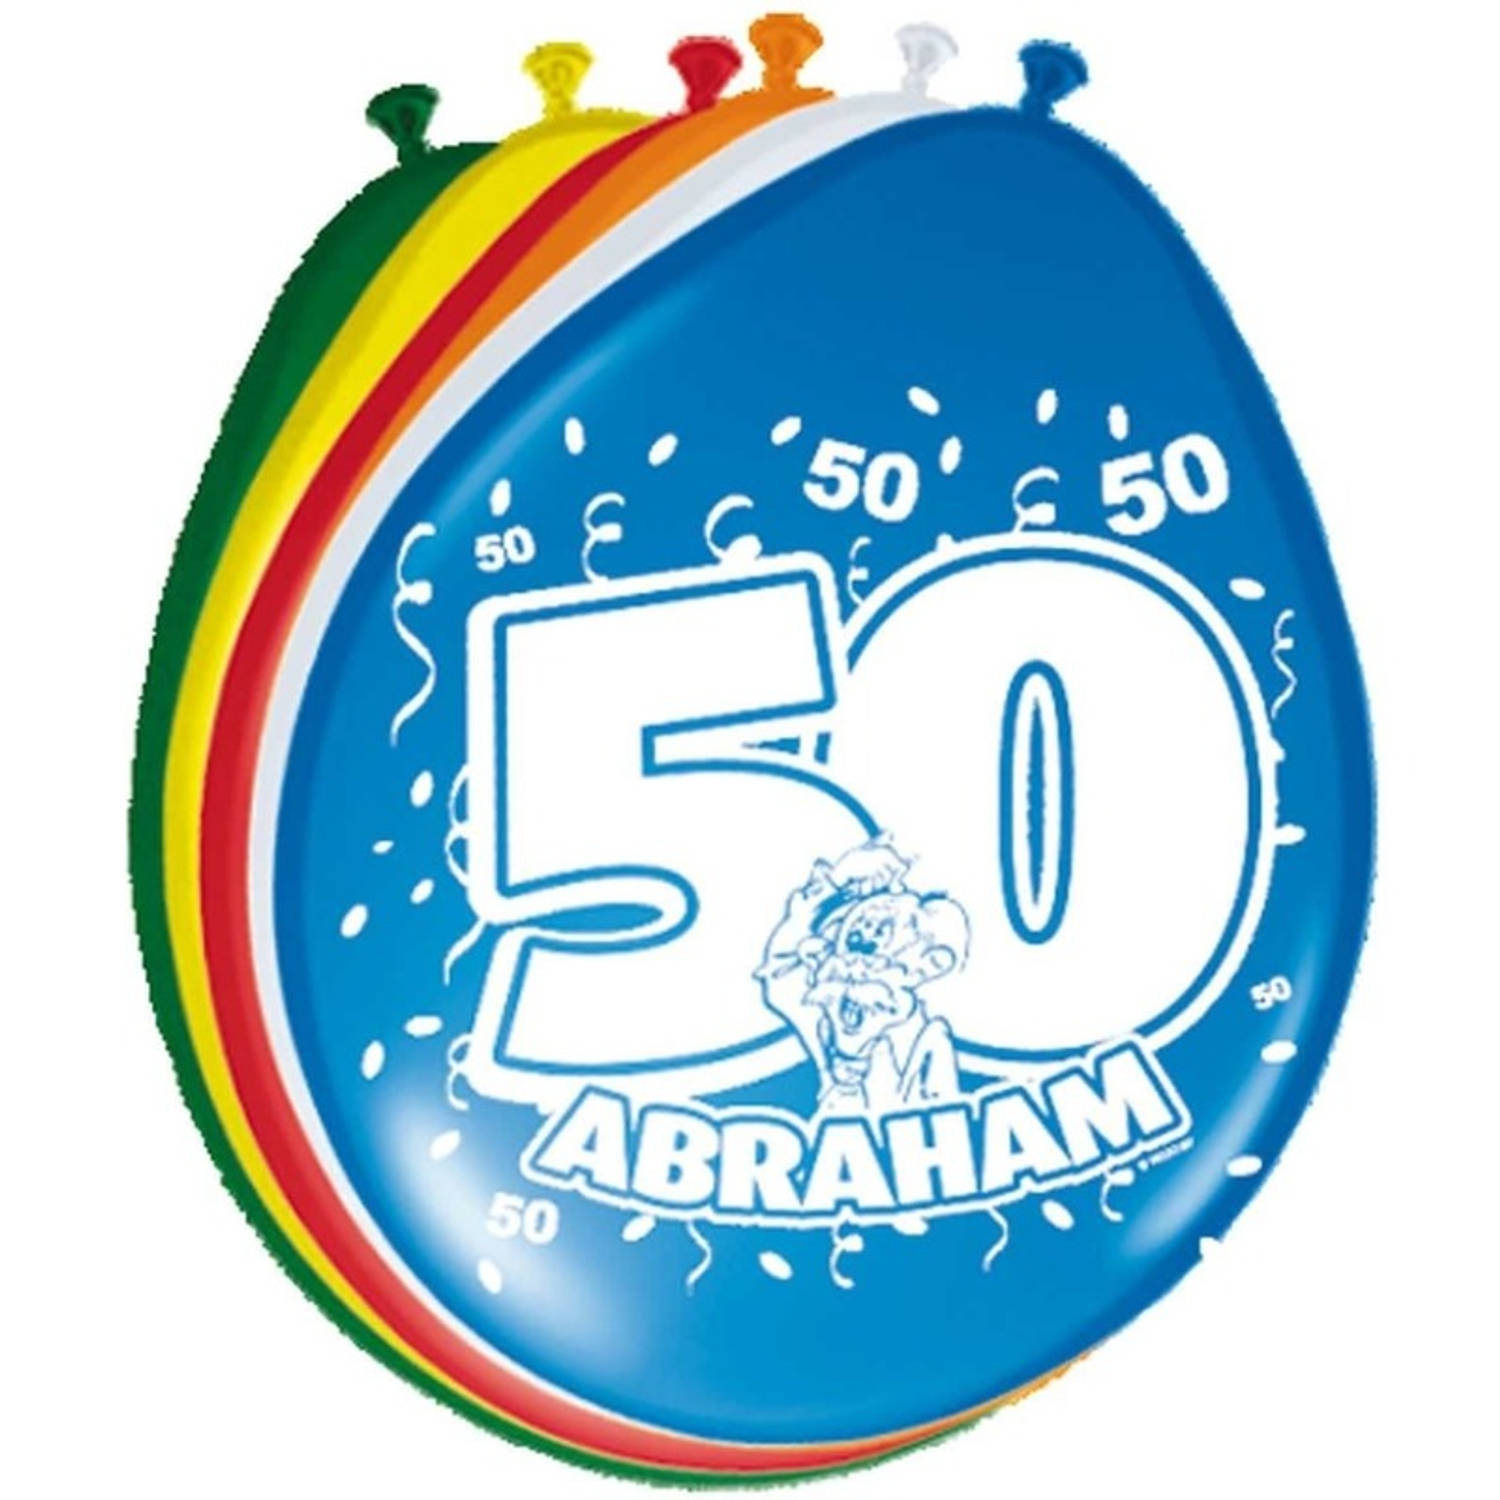 8x stuks Ballonnen versiering 50 jaar Abraham